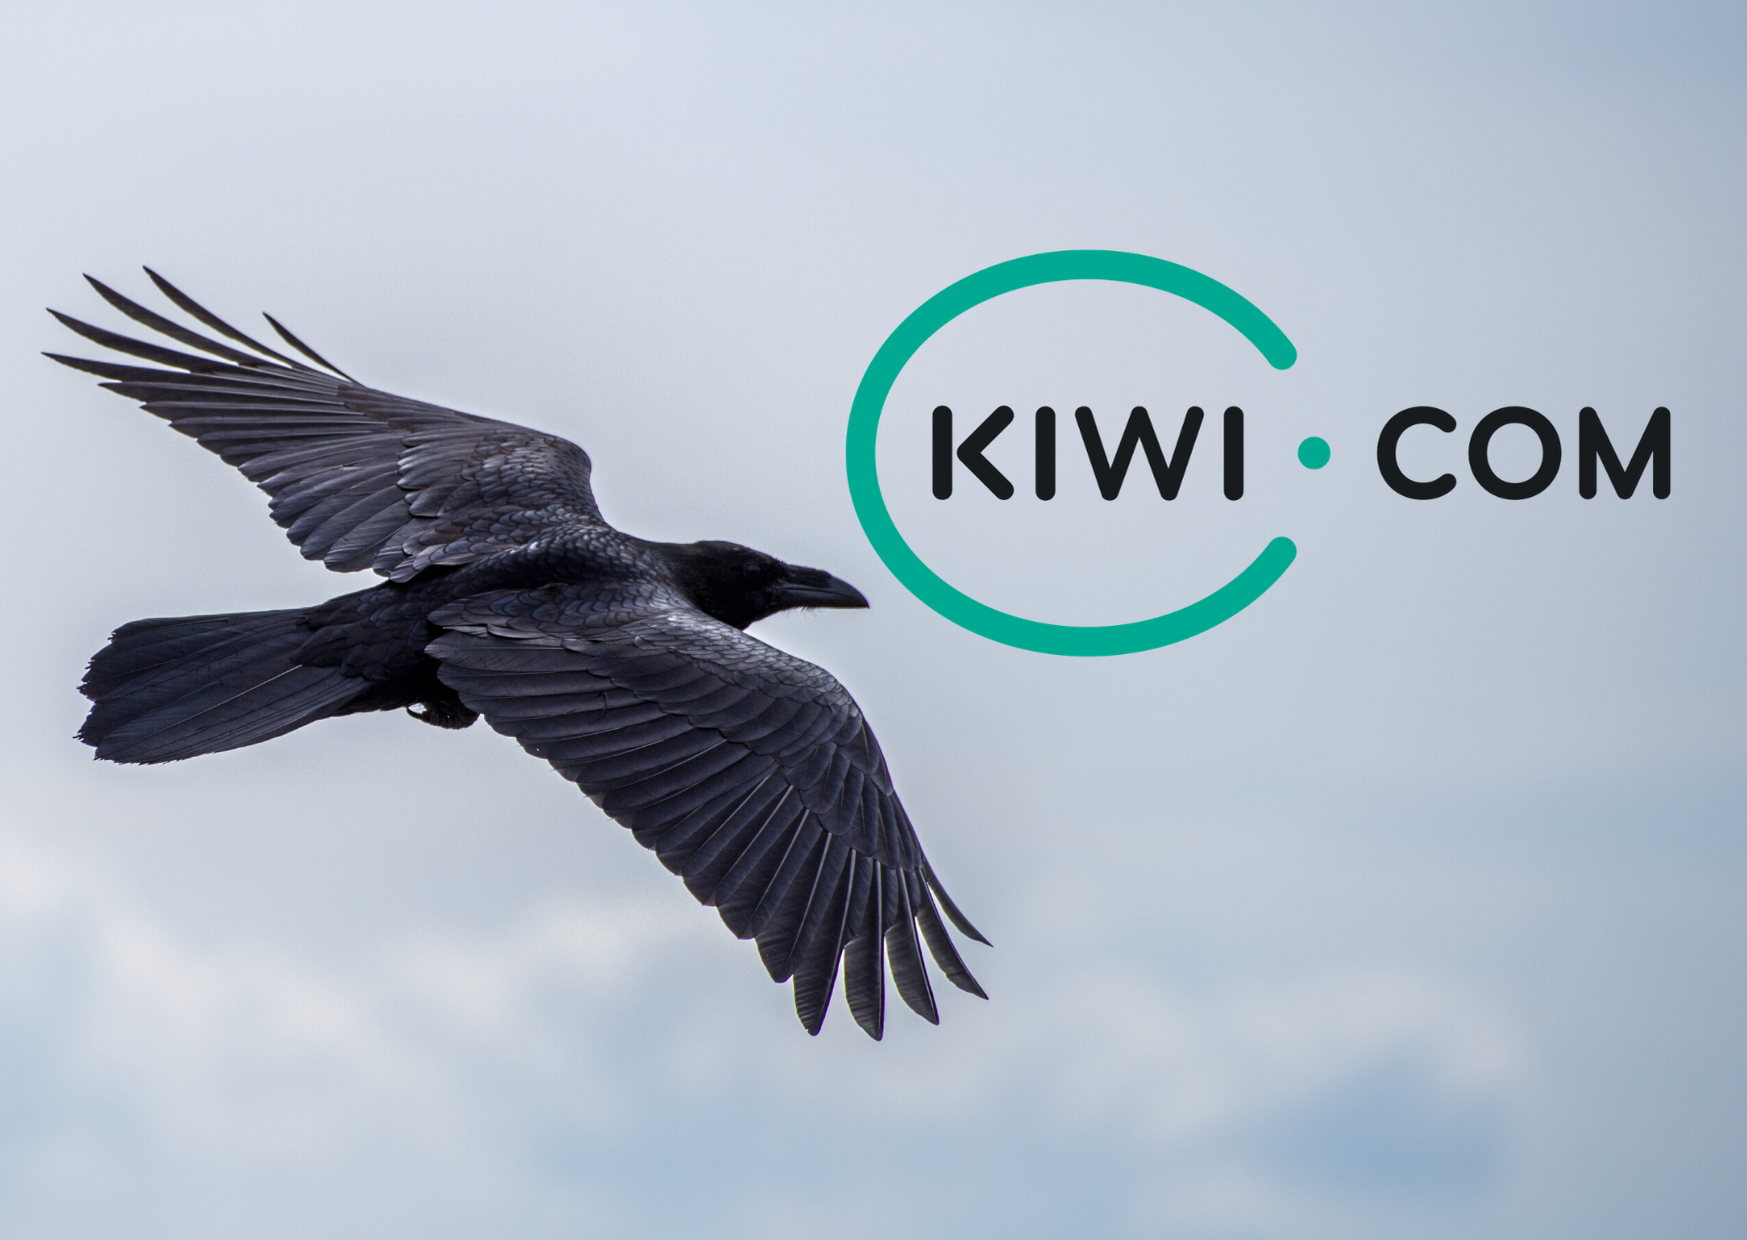 Kiwi.com – aviobiļešu meklēšanas un rezervēšanas rīks